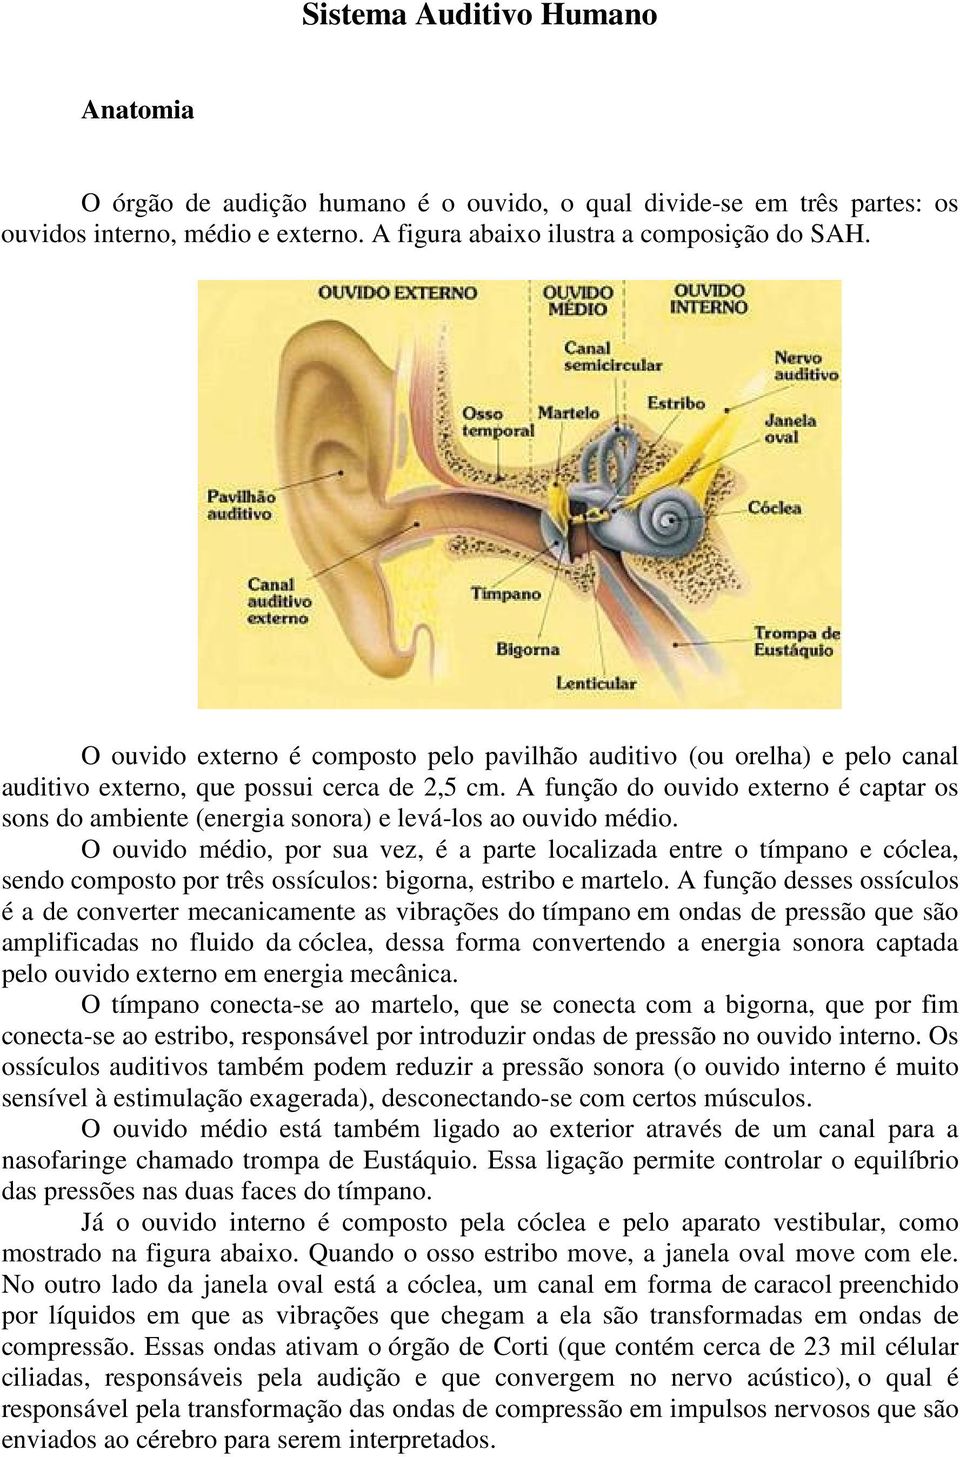 A função do ouvido externo é captar os sons do ambiente (energia sonora) e levá-los ao ouvido médio.